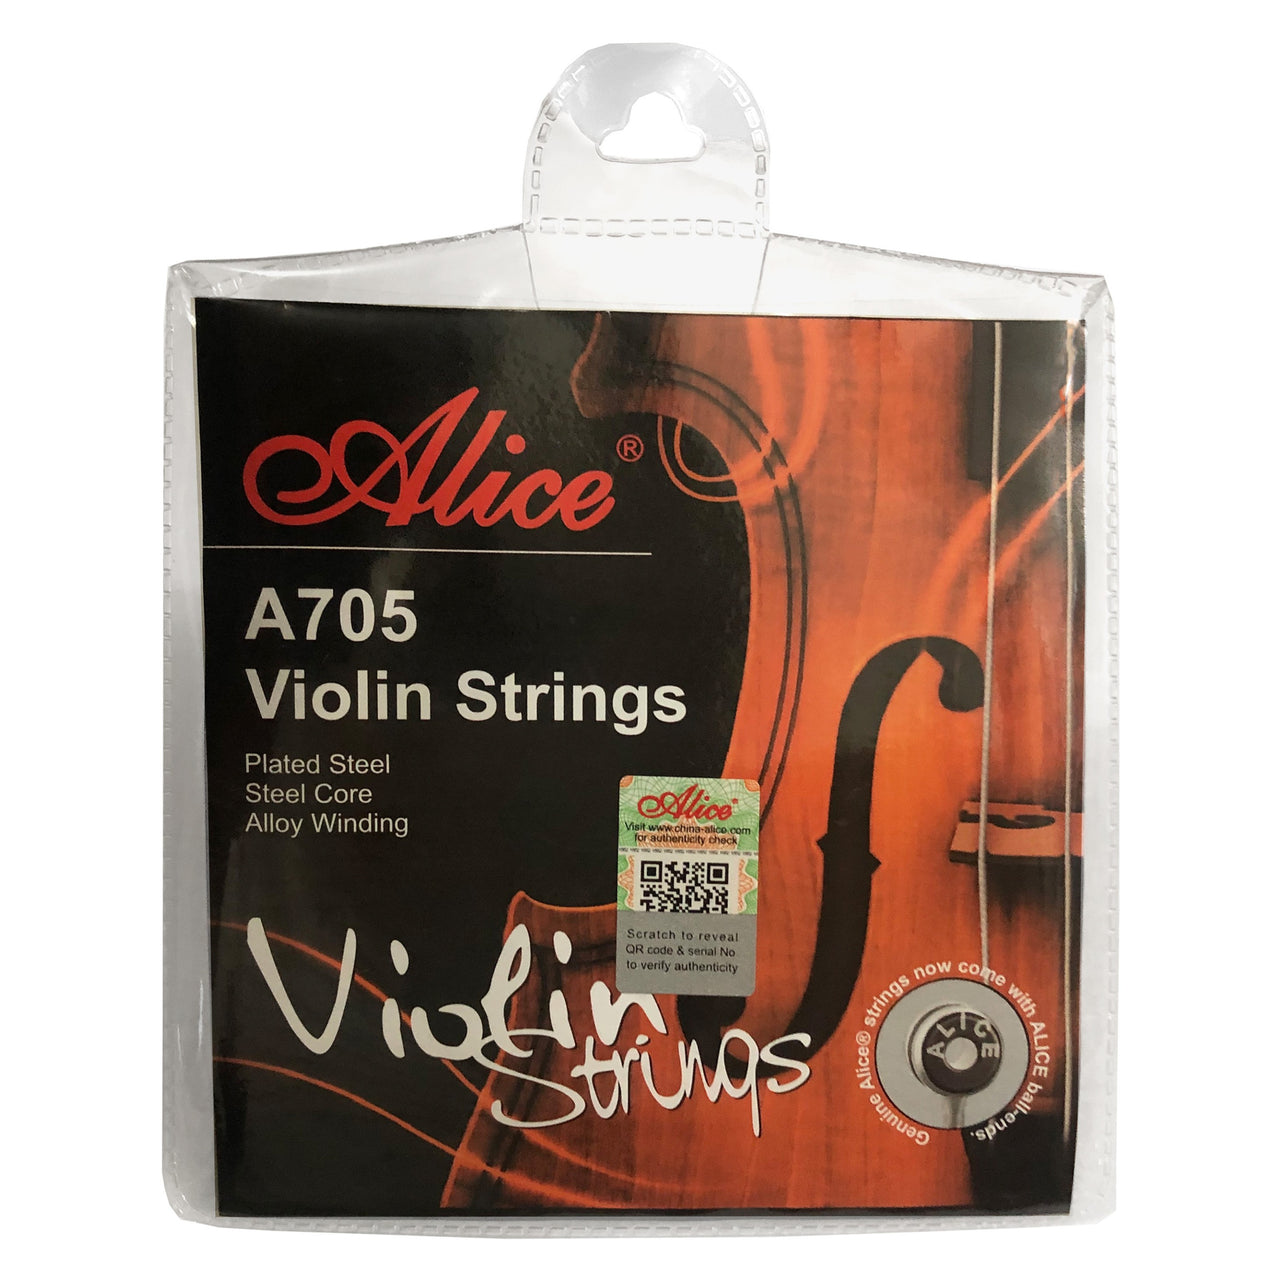 Encordadura Alice A705 Para Violin